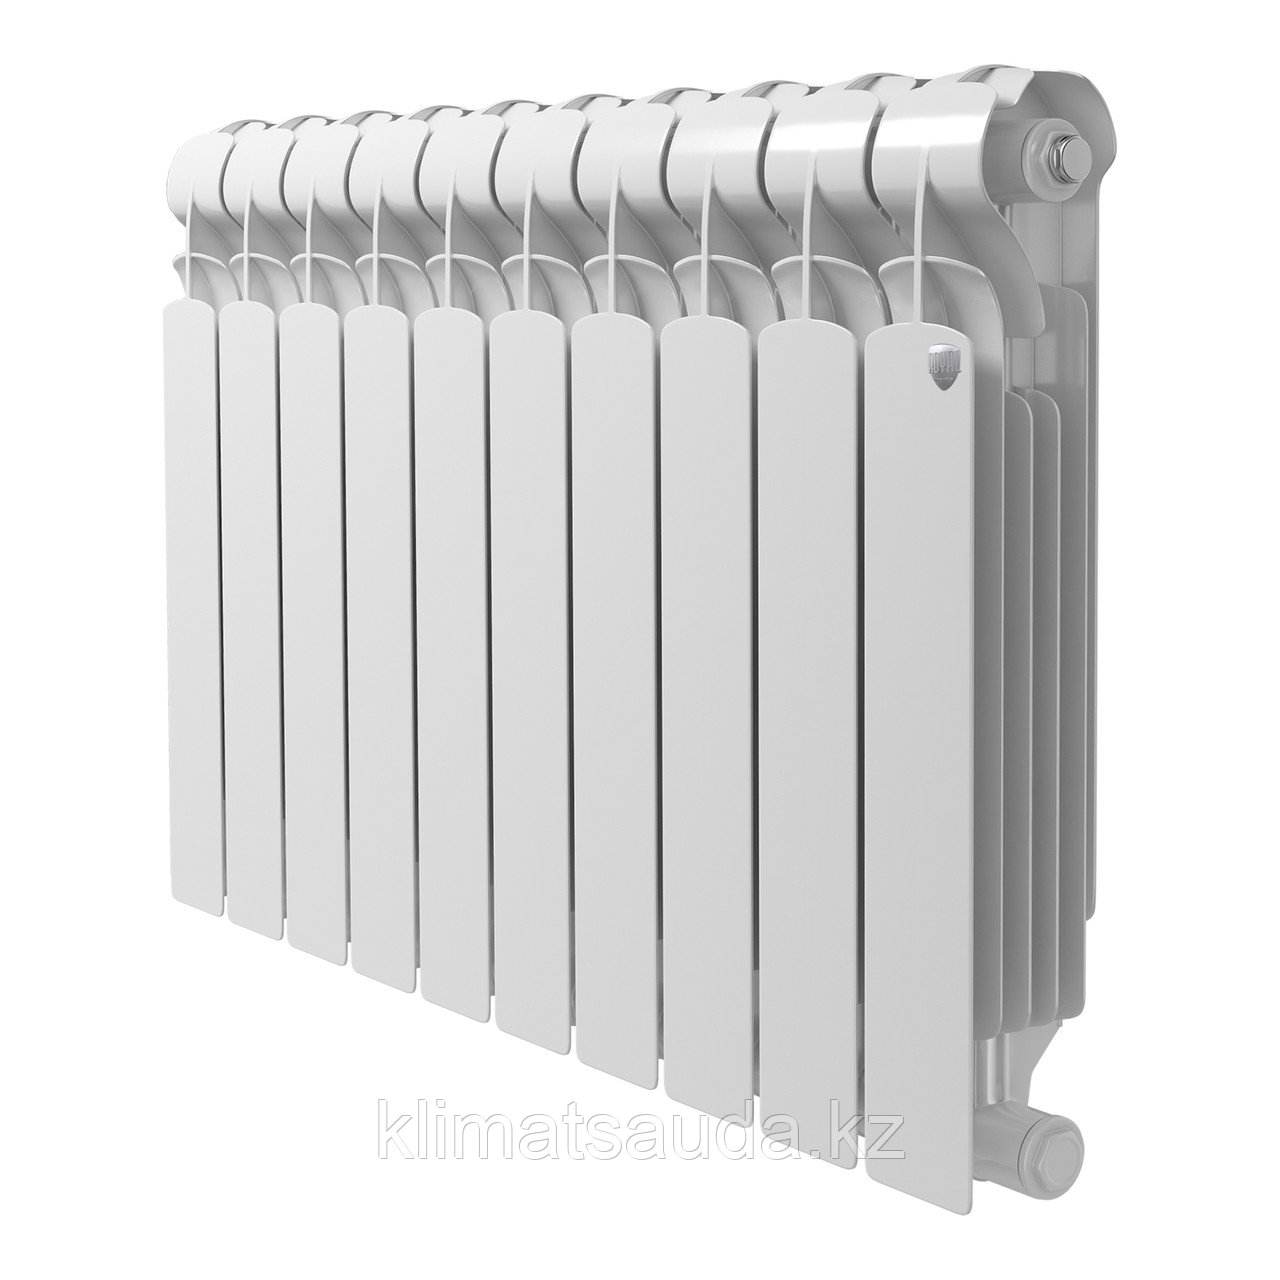 Биметаллический радиатор INDIGO SUPER+ 500